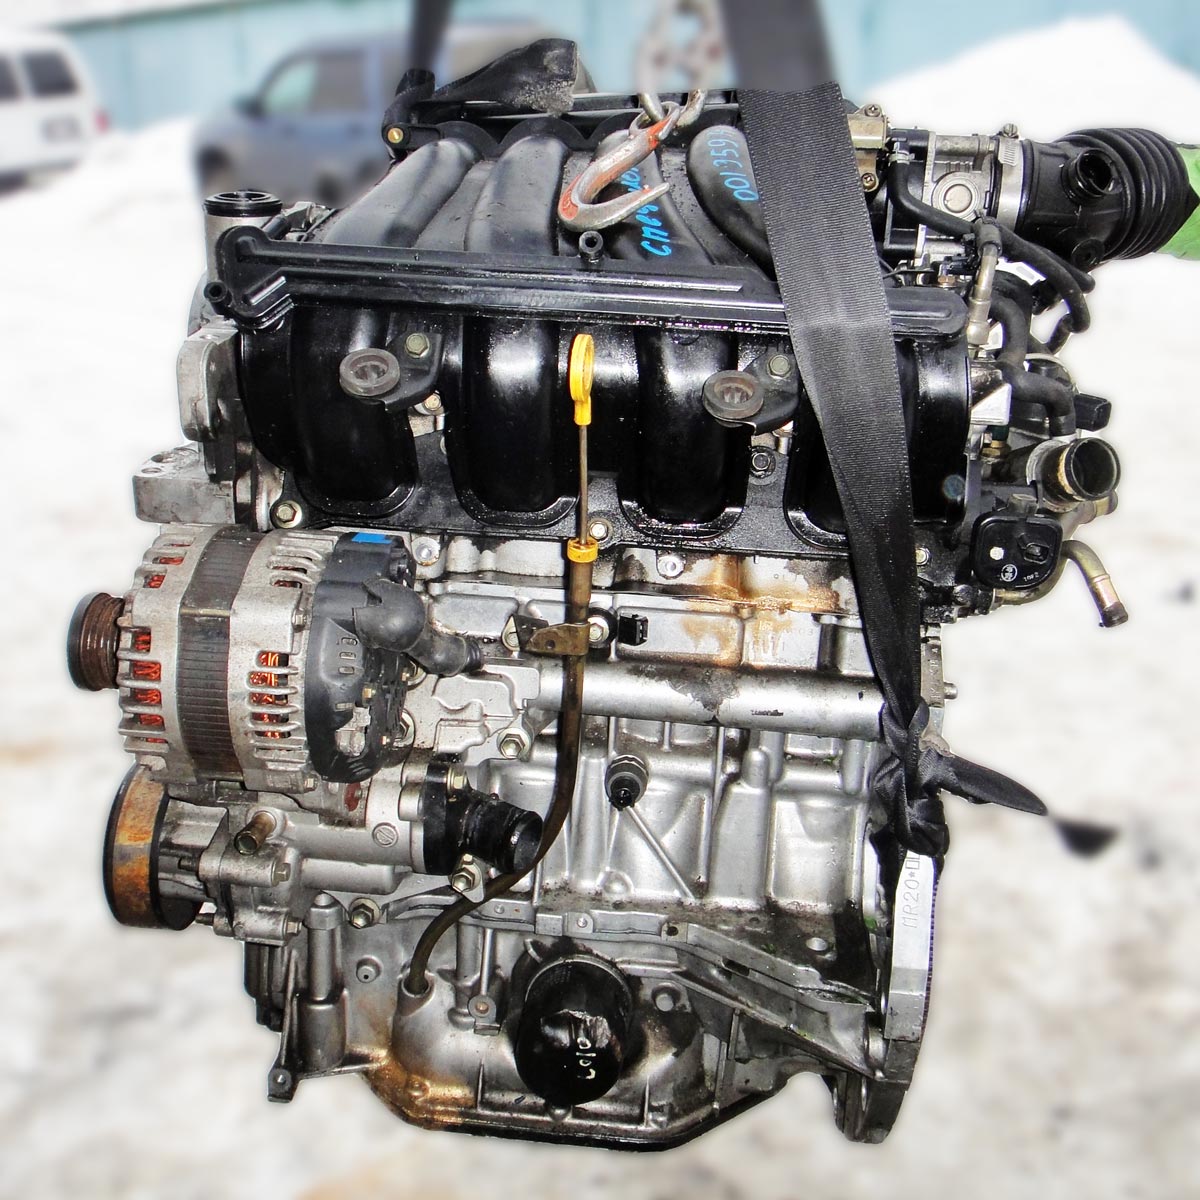 Двигатель nissan mr20de технические характеристики, цепь грм, масло, ресурс, ремонт